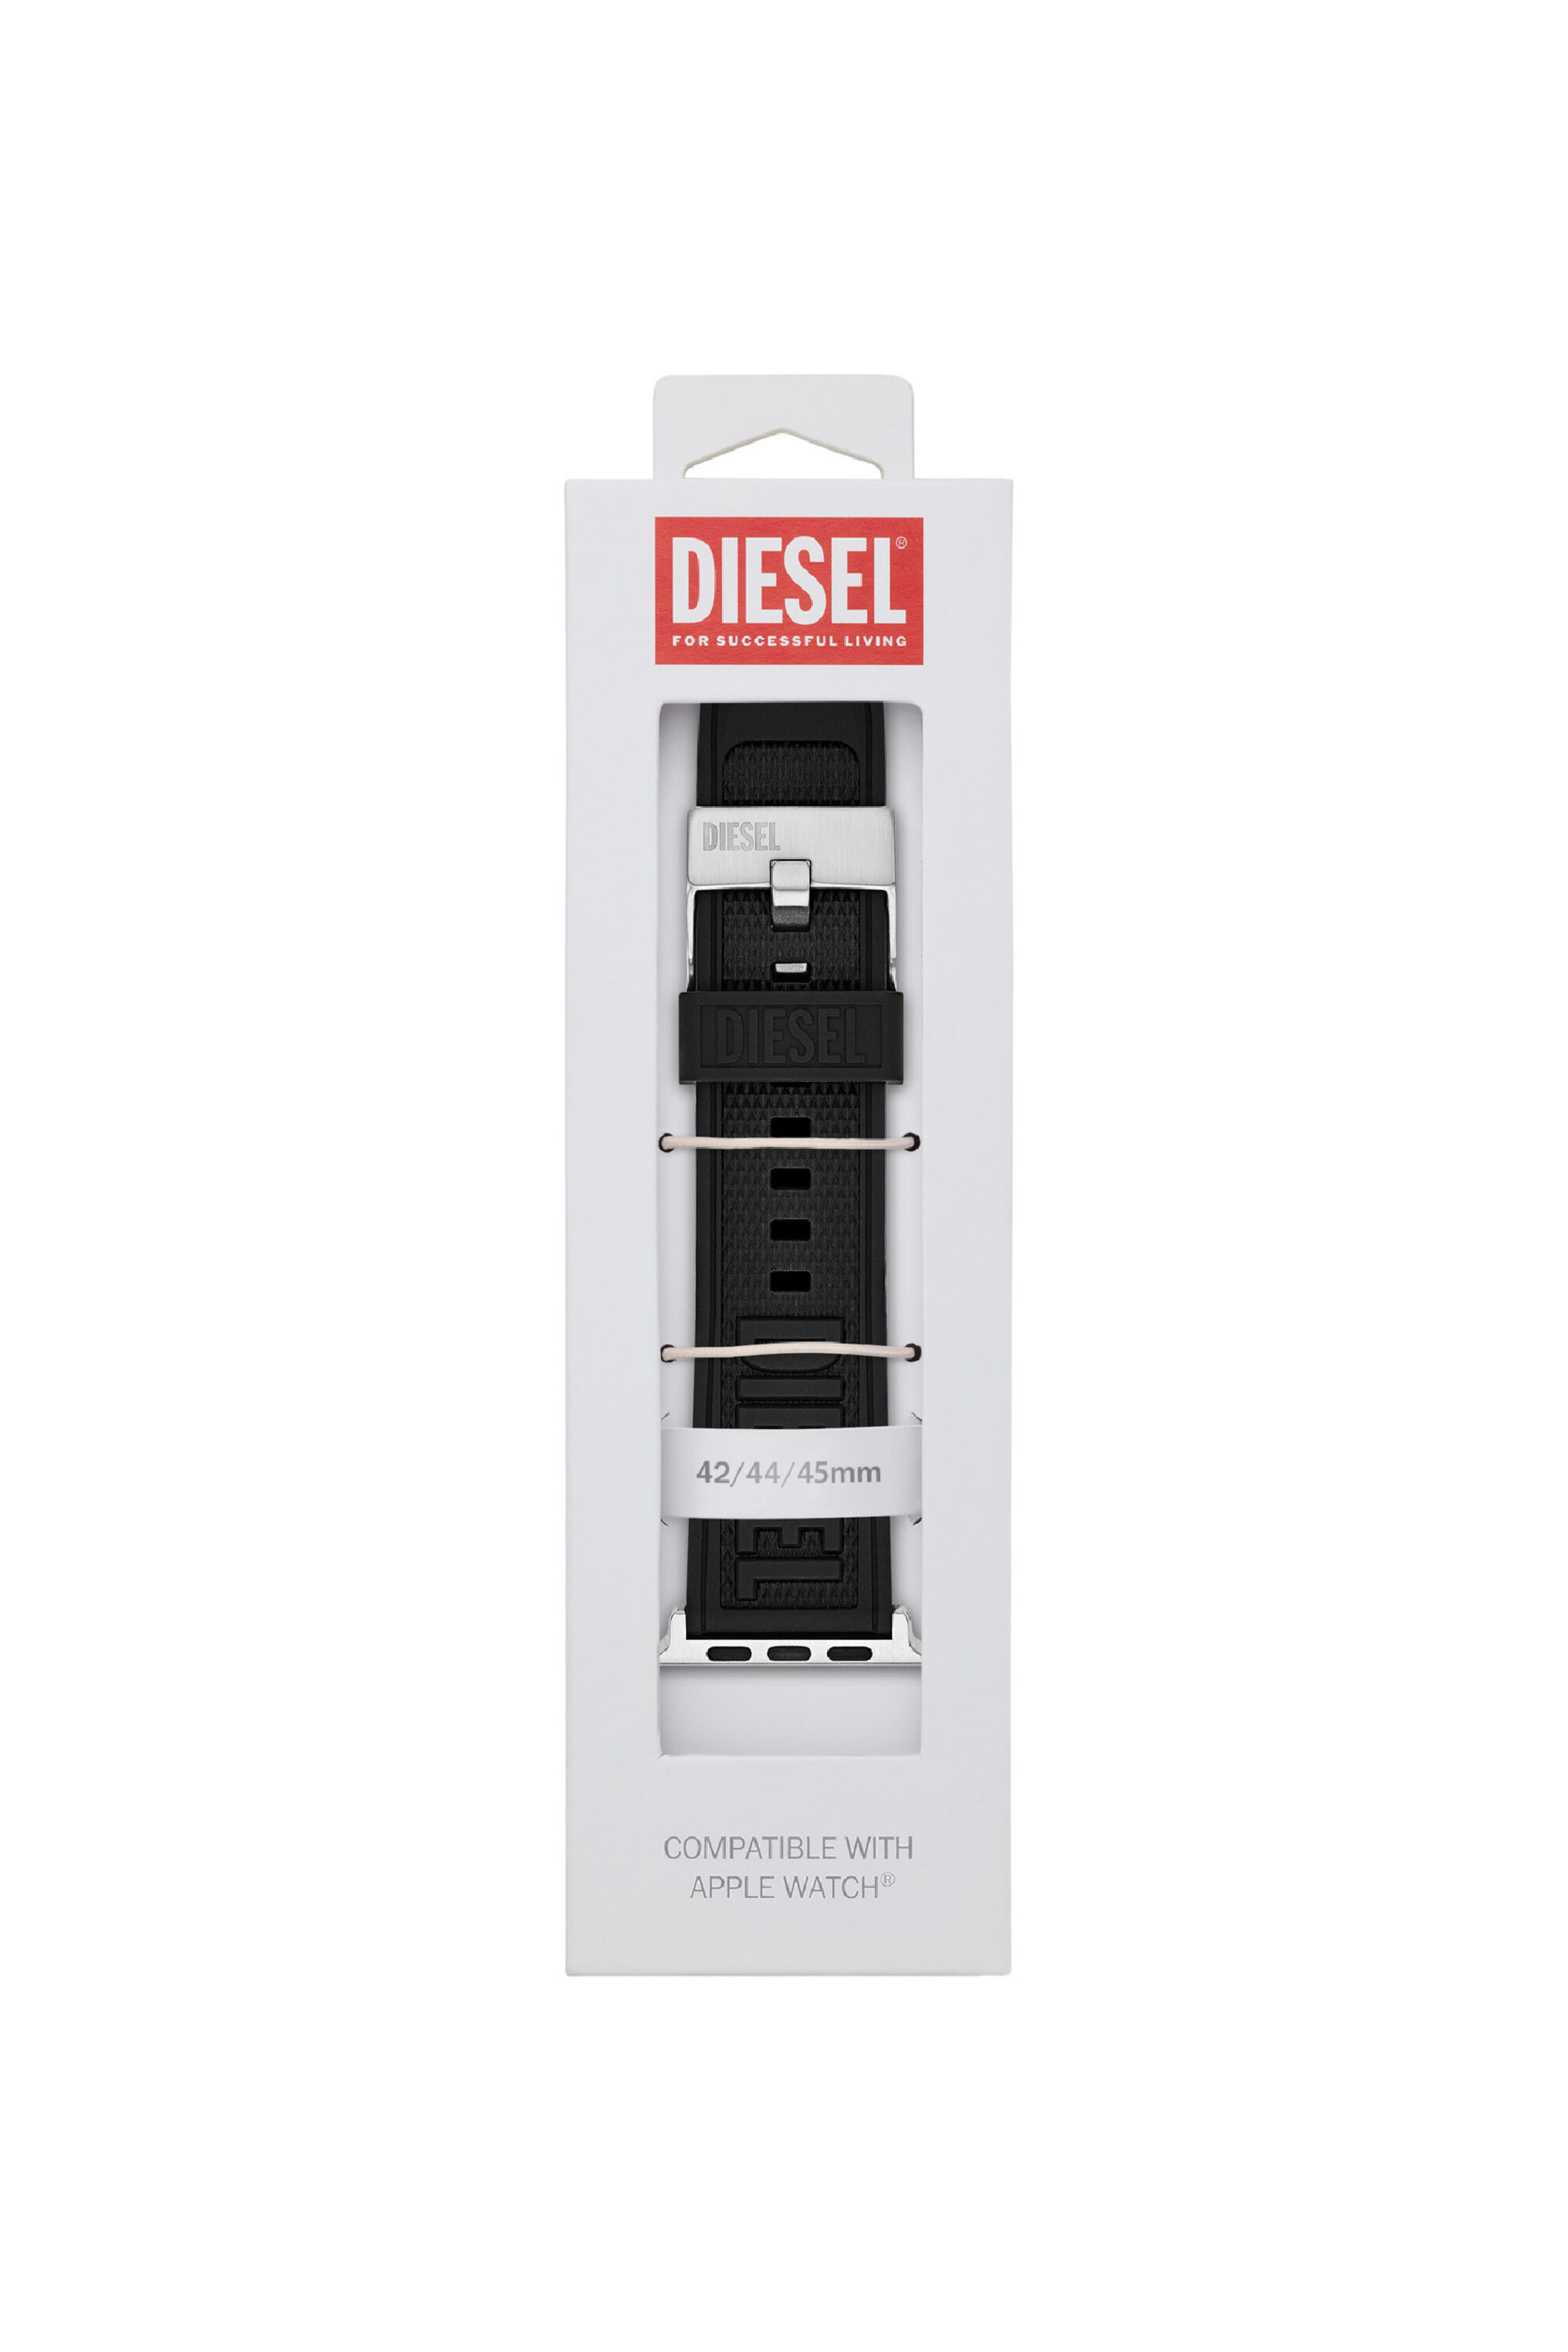 Diesel - DSS0014, Negro - Image 2